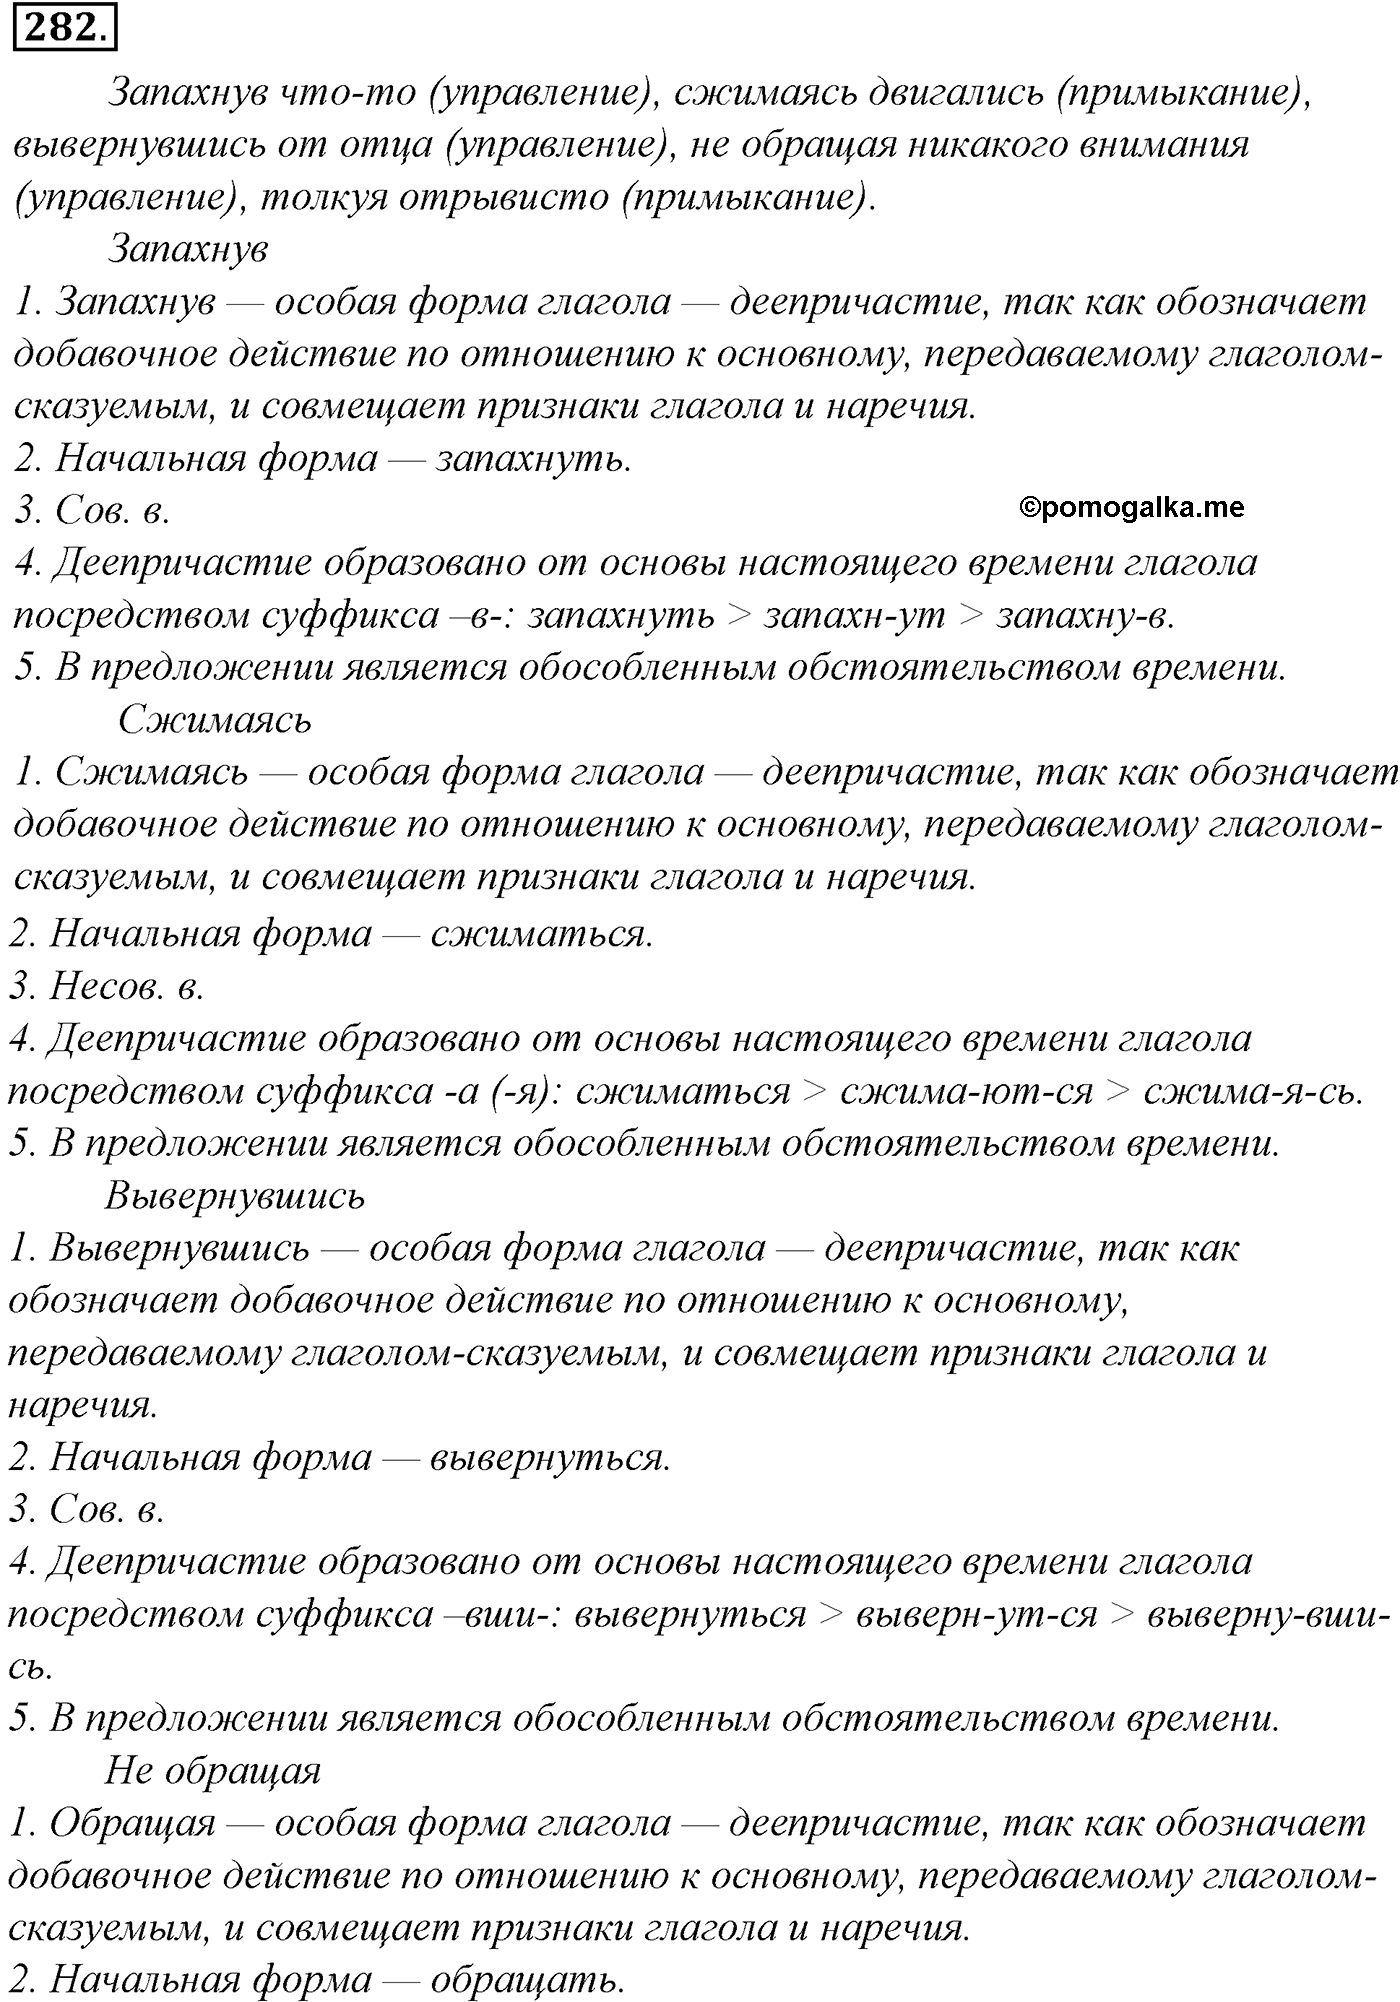 упражнение №282 русский язык 10-11 класс Гольцова